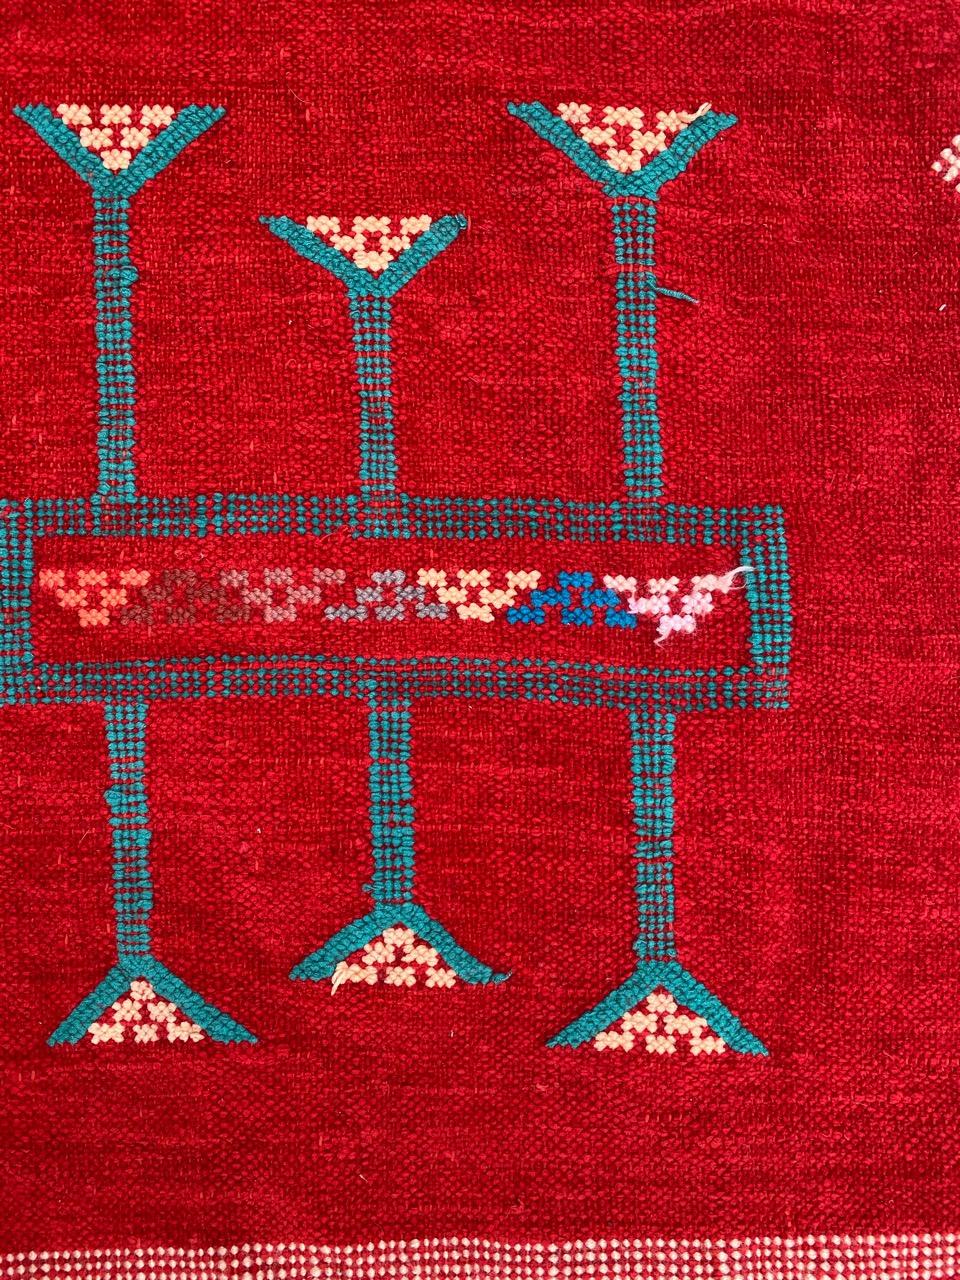 Magnifique Kilim Berbère marocain du milieu du siècle avec un joli design tribal géométrique et une belle couleur rouge, entièrement tissé à la main avec de la soie et du coton.

✨✨✨
